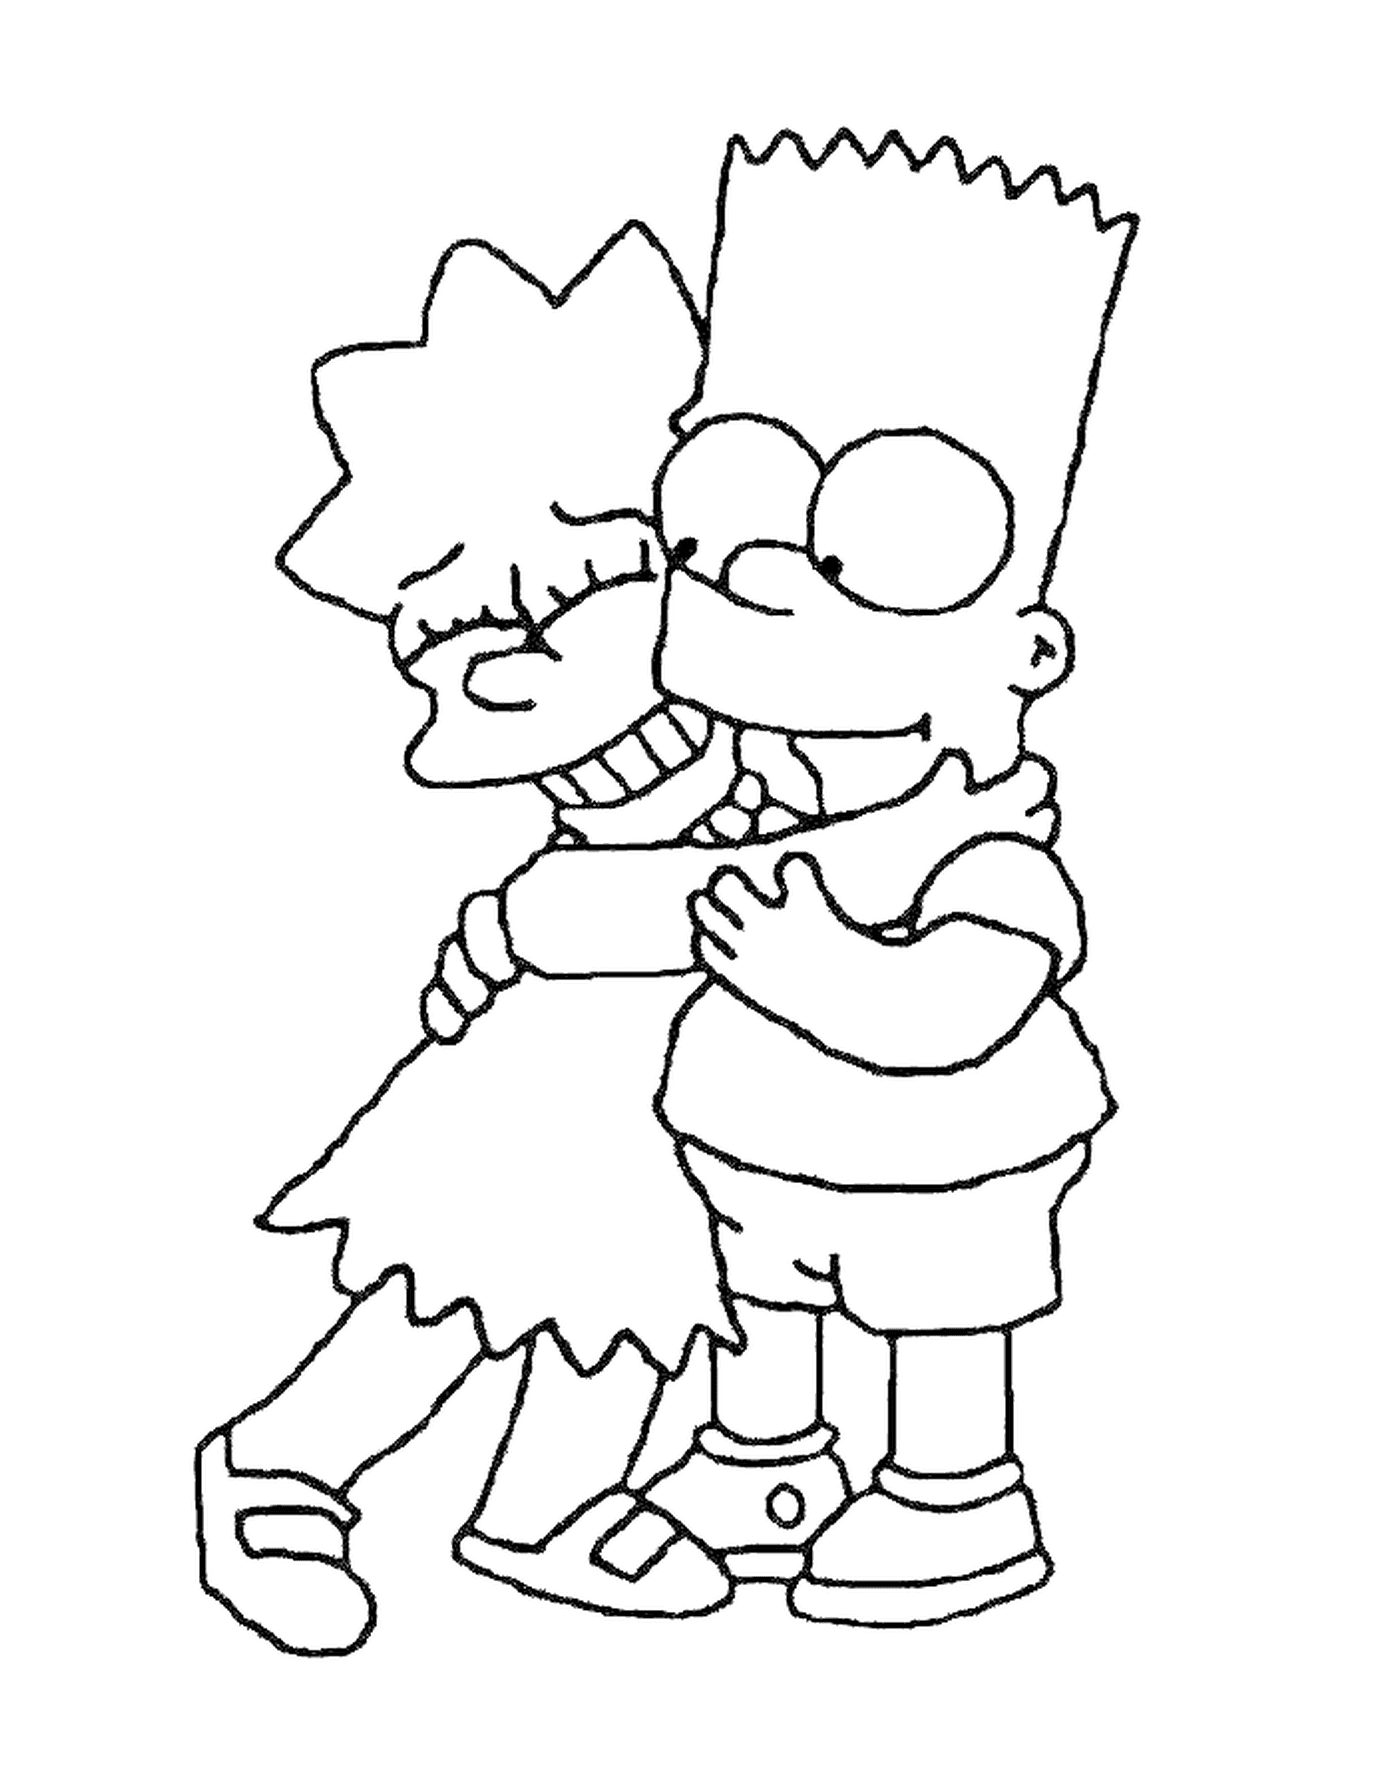  Bart e Lisa abbraccio, ragazzo che tiene una ragazza tra le braccia 